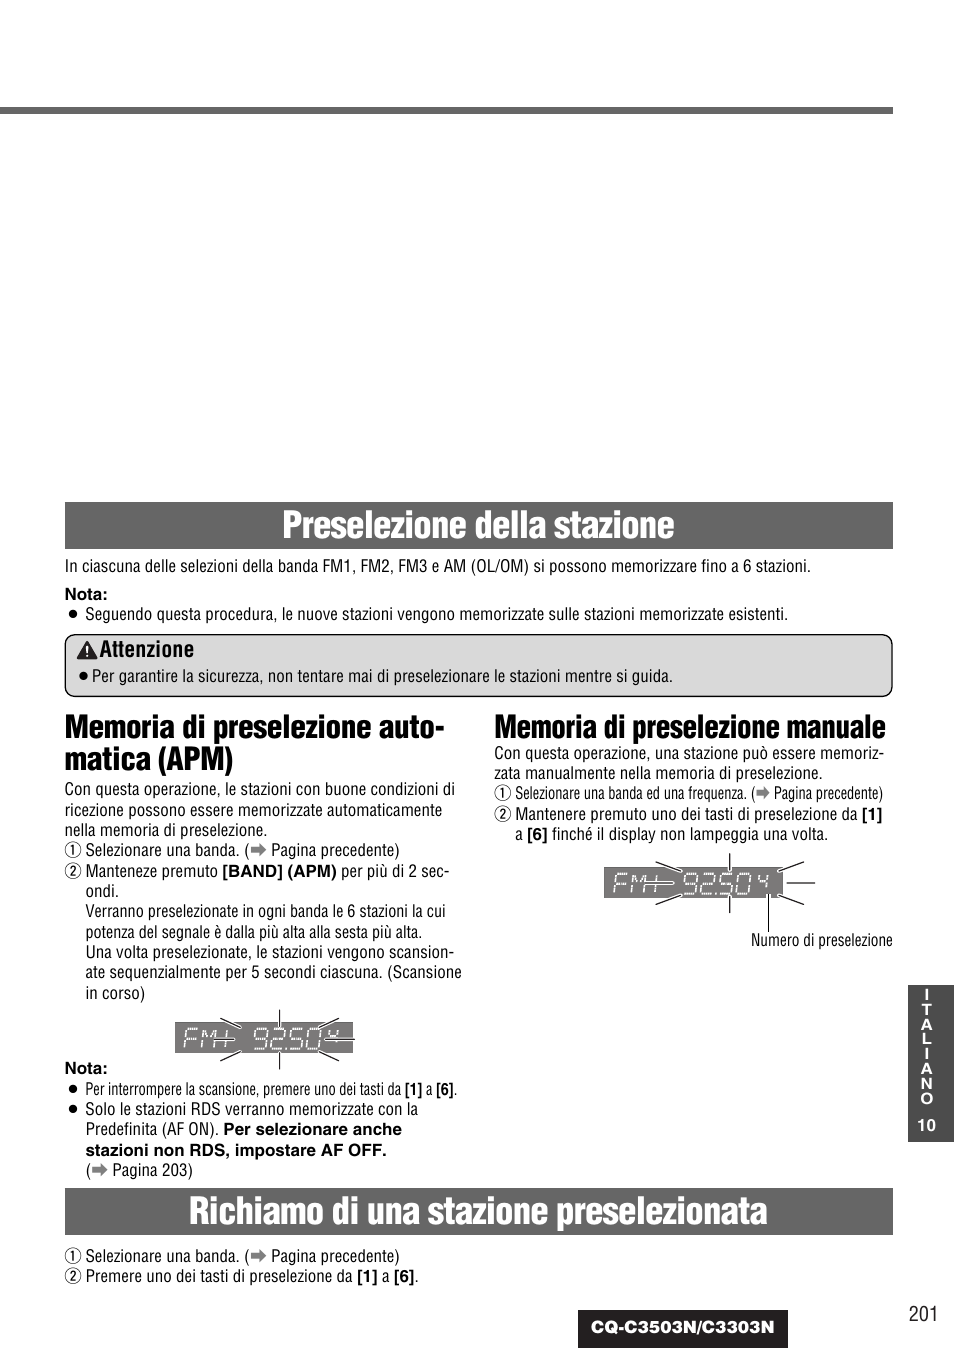 Preselezione della stazione, Richiamo di una stazione preselezionata, Attenzione | Panasonic CQC3303N Manuale d'uso | Pagina 10 / 38